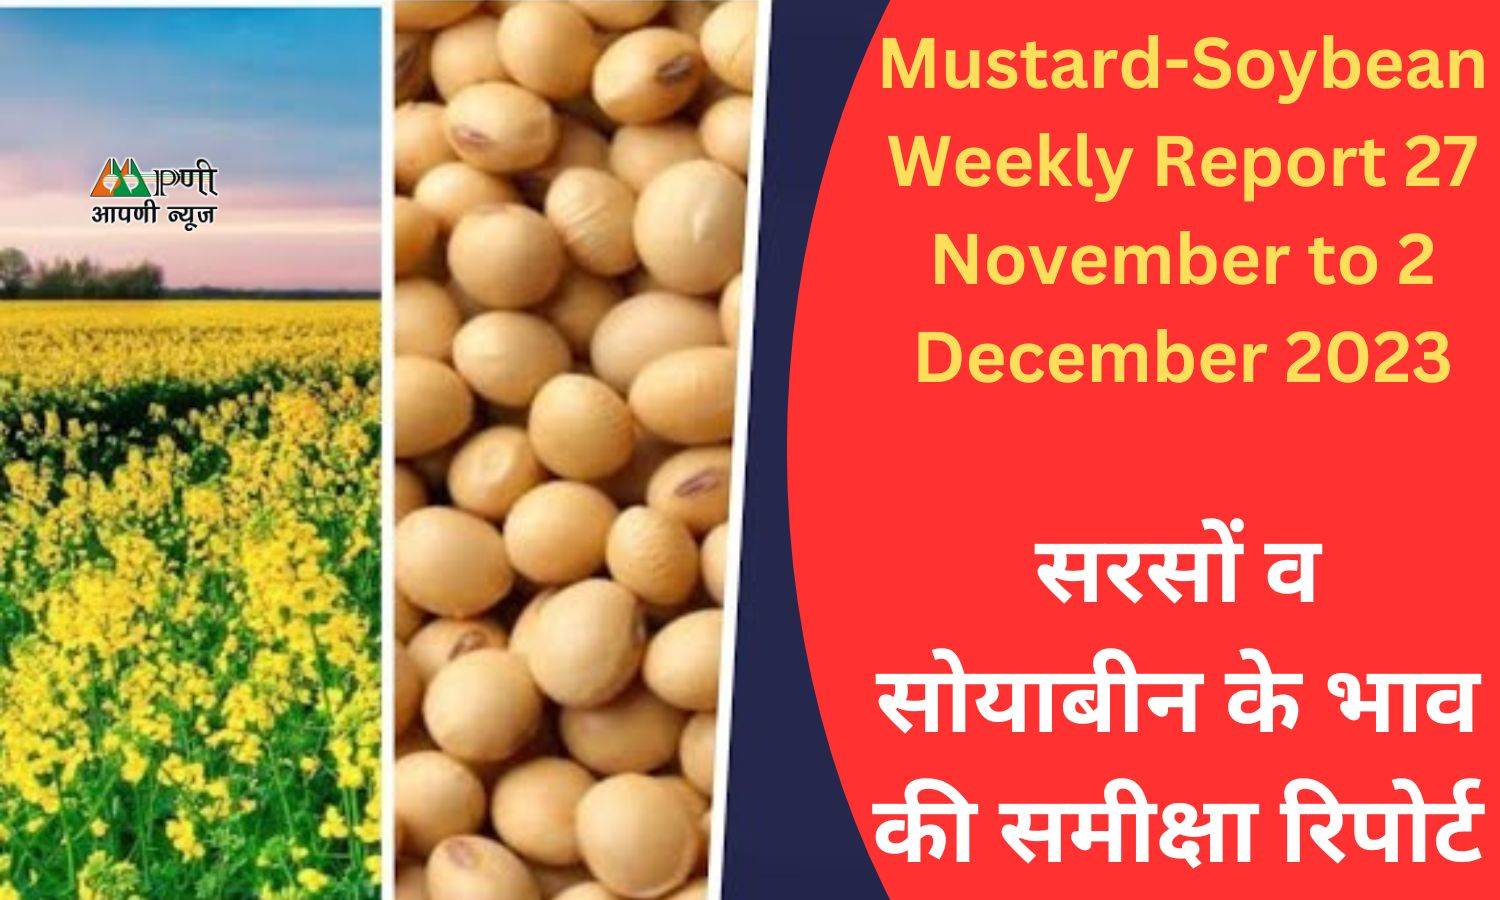 Mustard-Soybean Weekly Report 27 November to 2 December: सरसों व सोयाबीन के भाव की समीक्षा रिपोर्ट